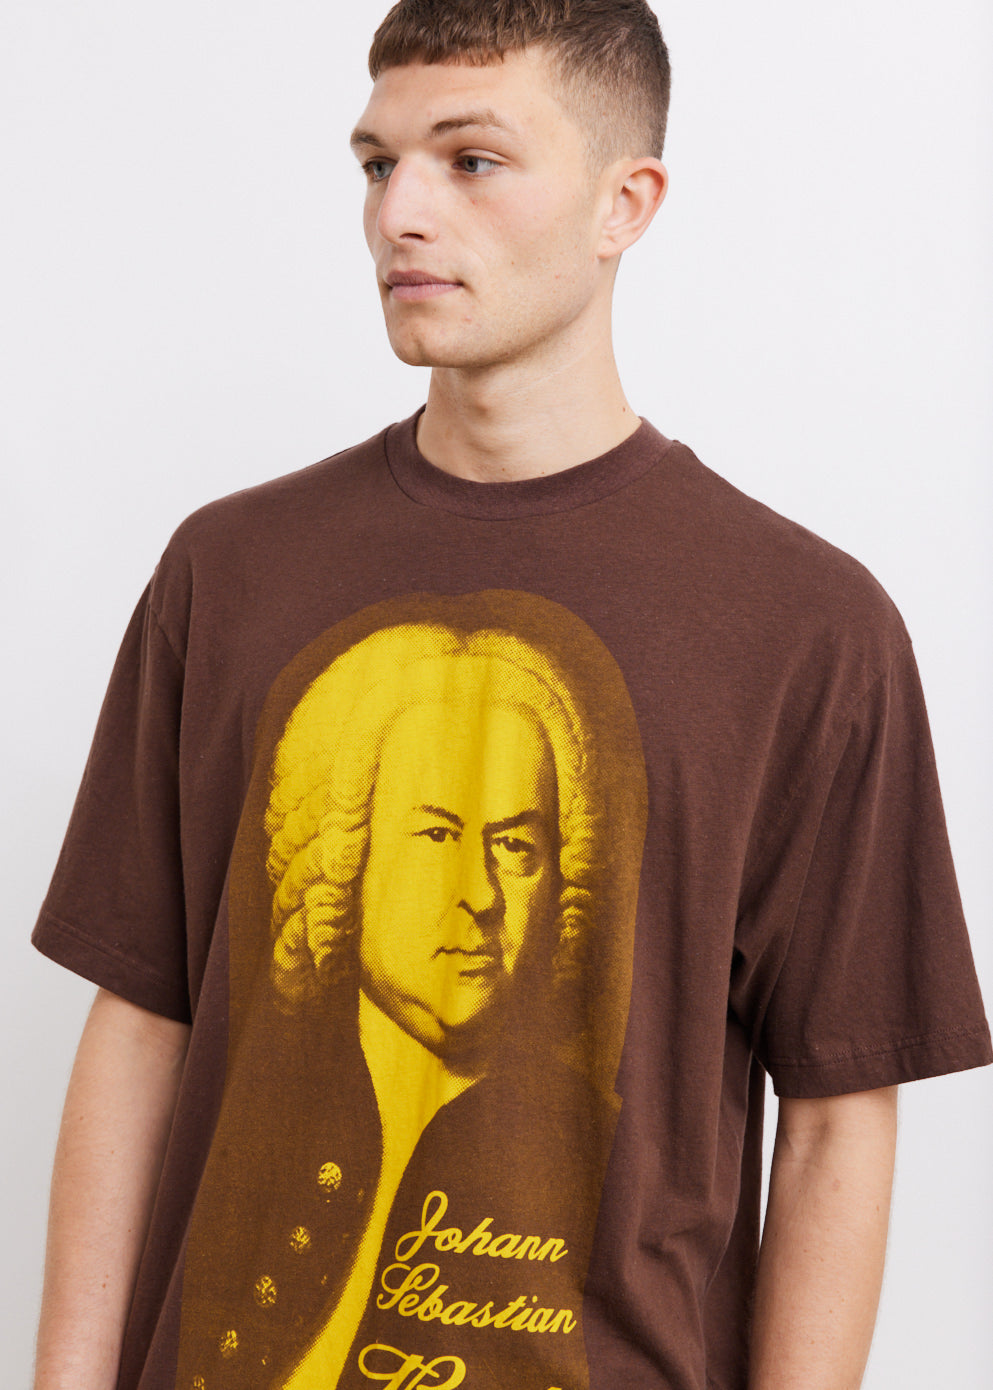 Exford Composer T-Shirt